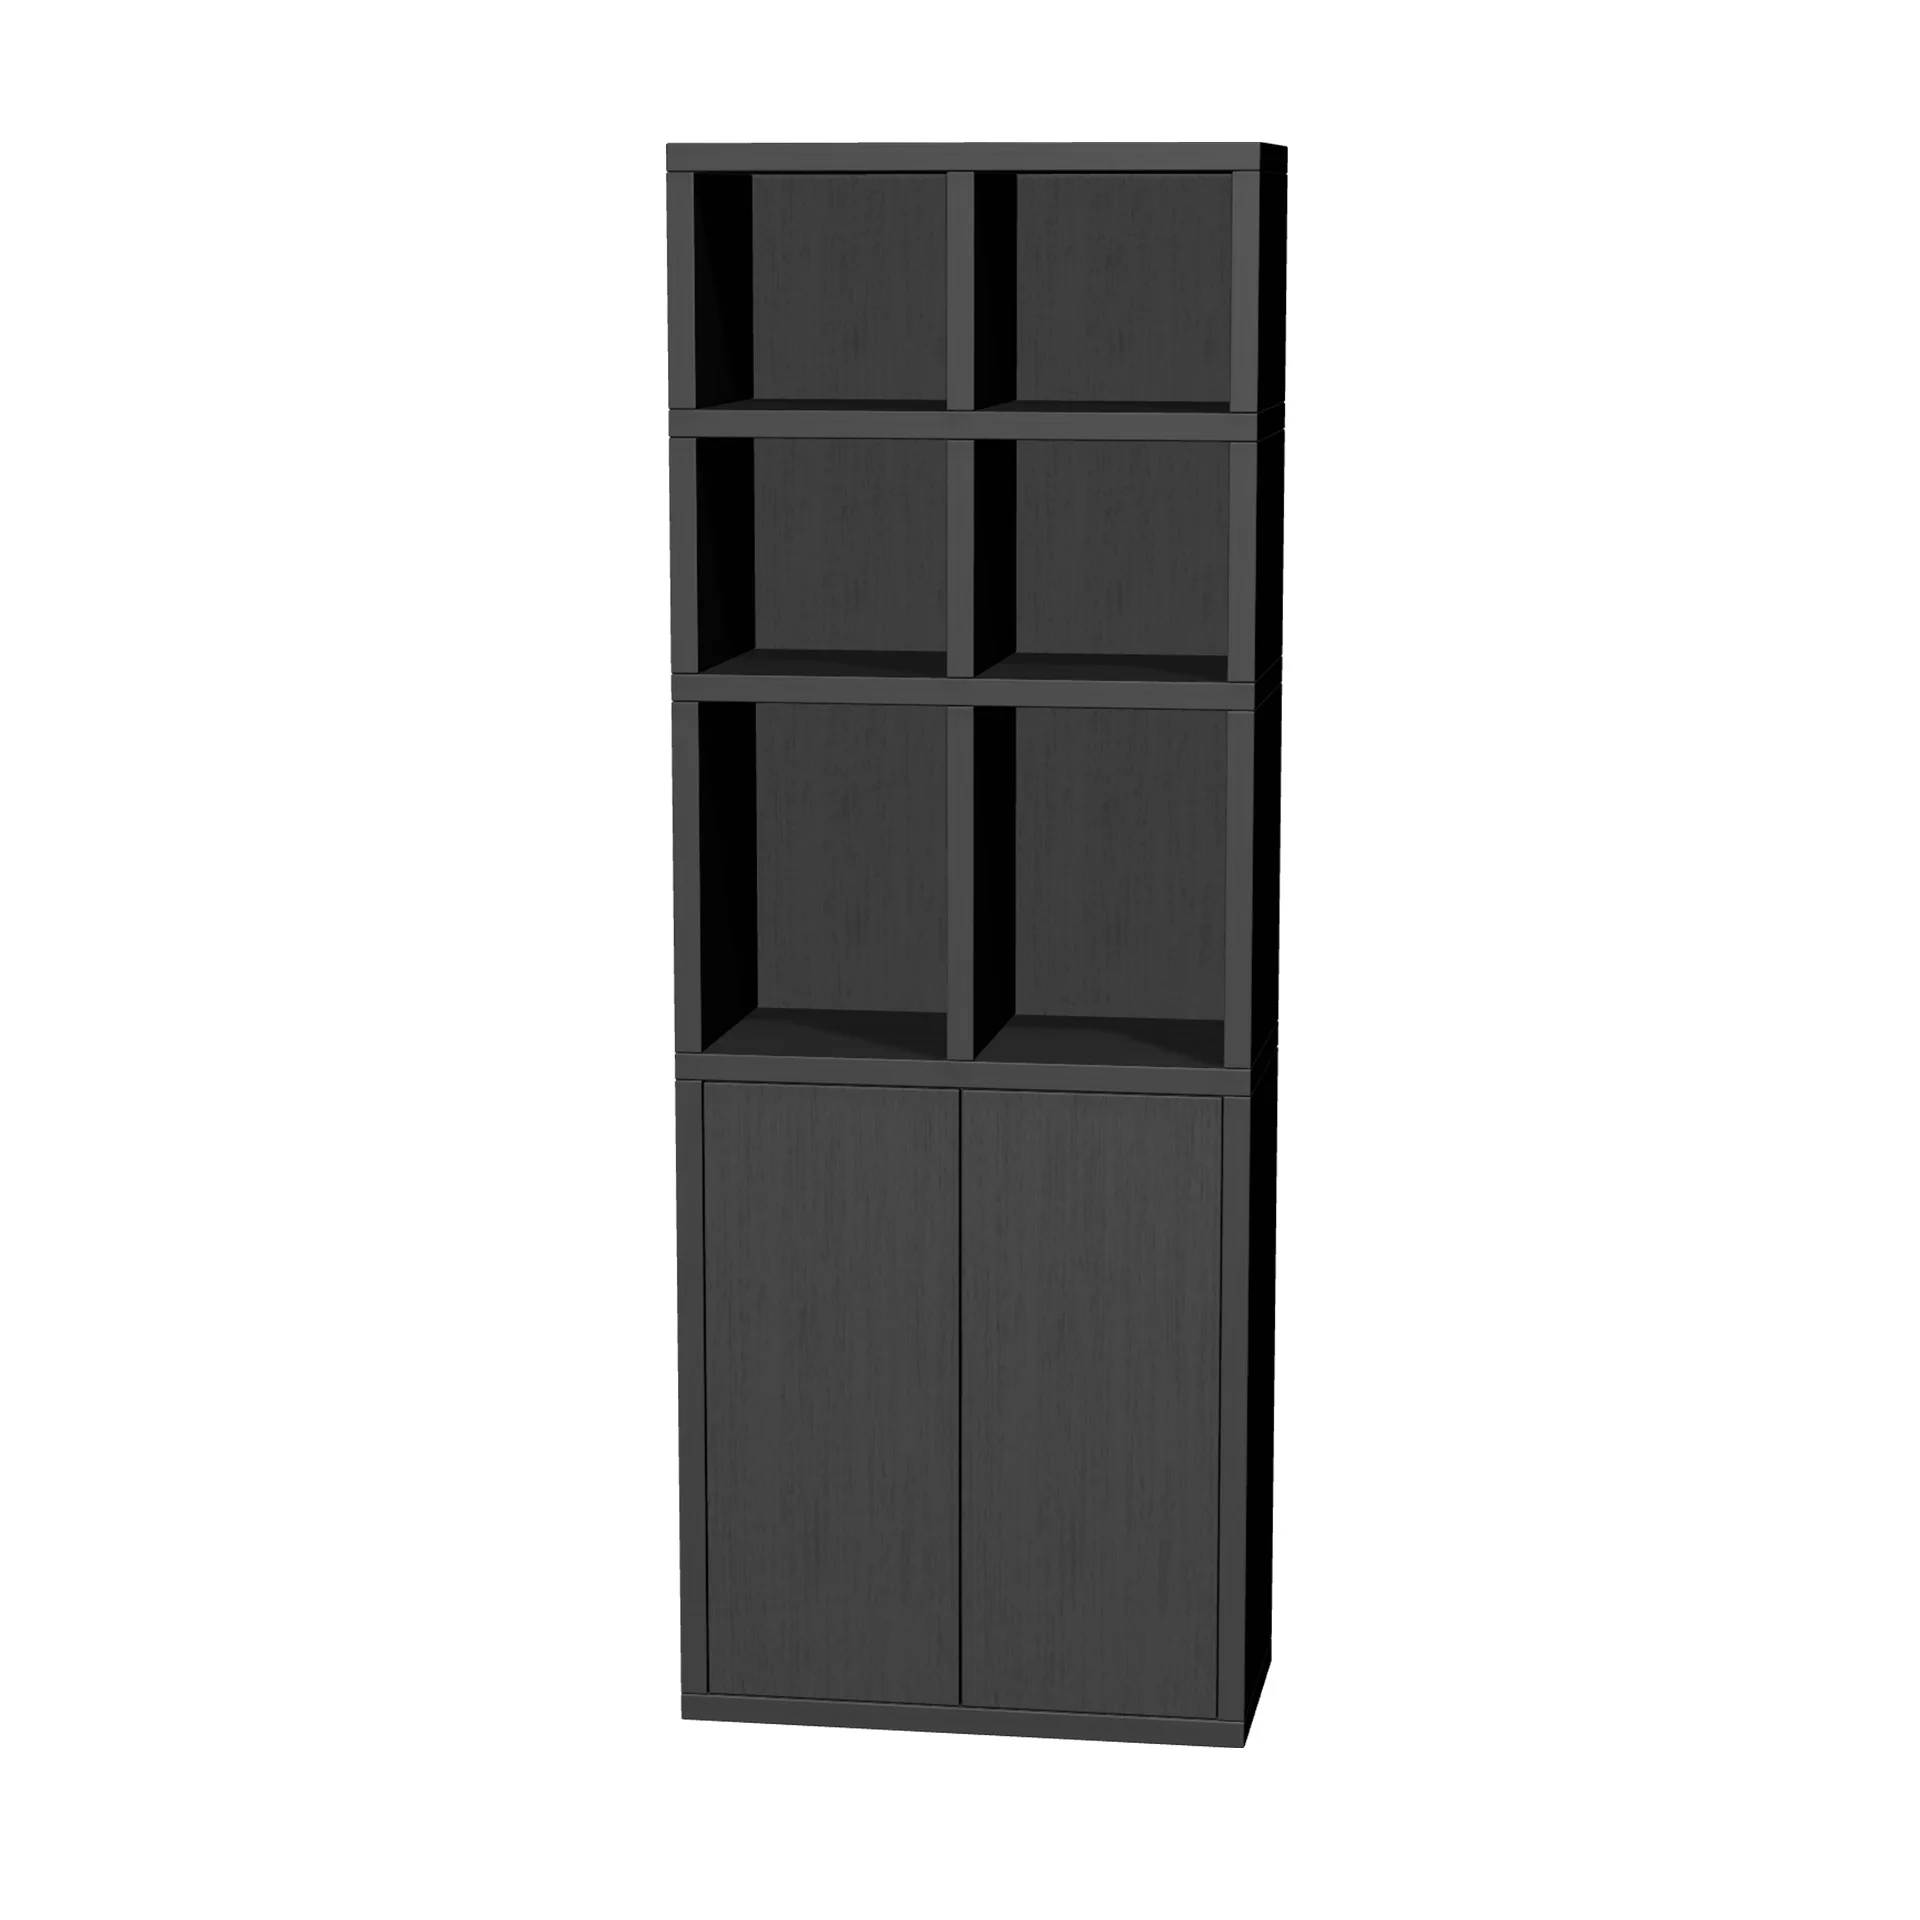 TSFC030 in black oak furniture board